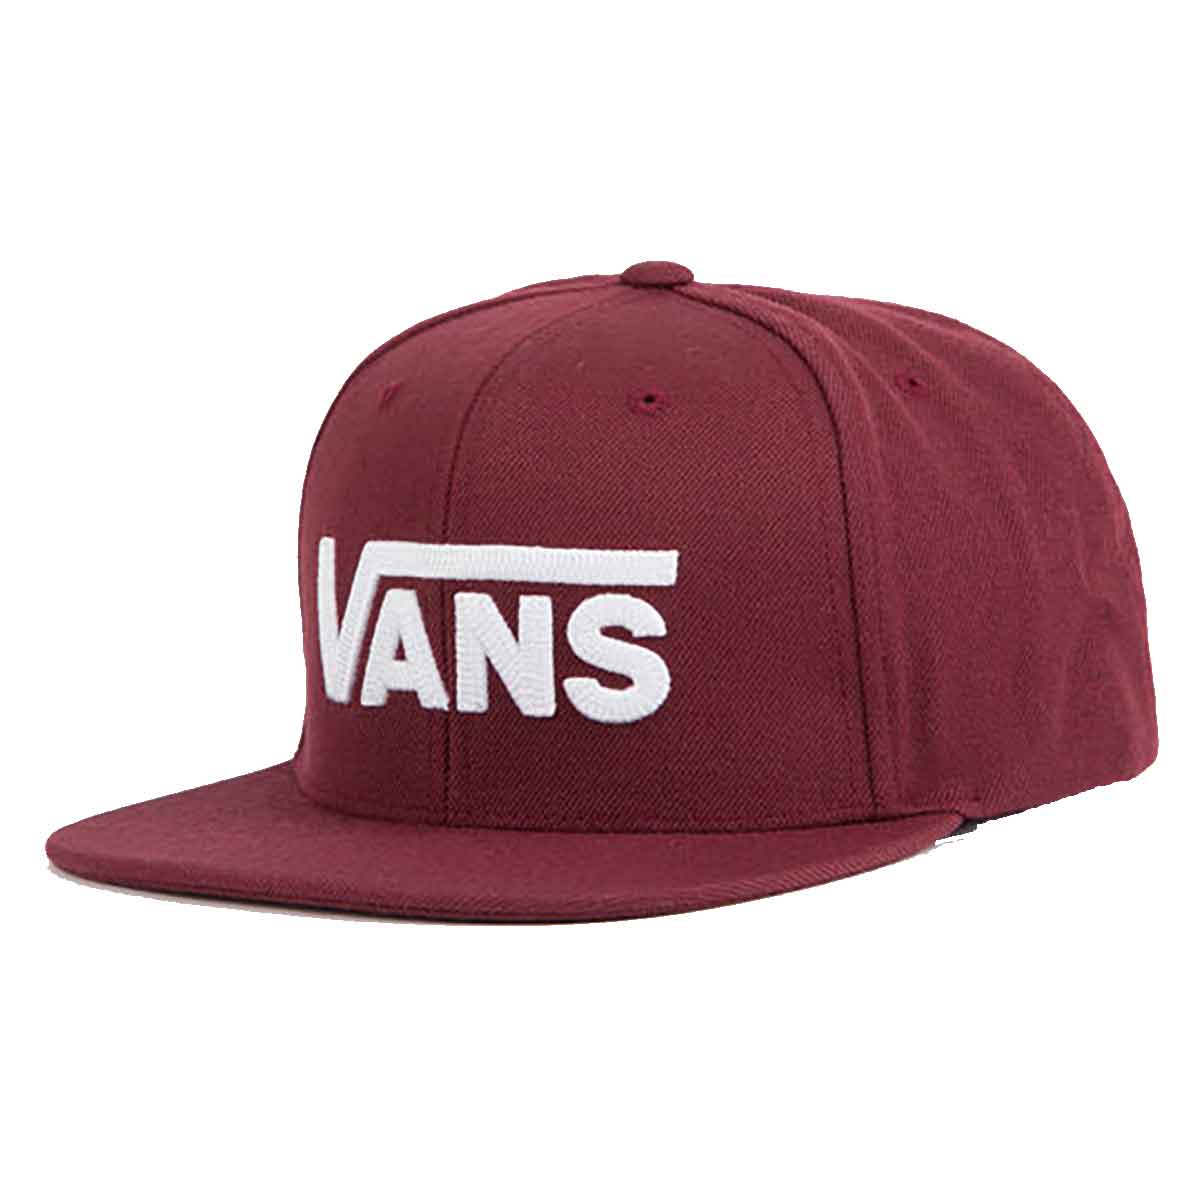 maroon vans hat